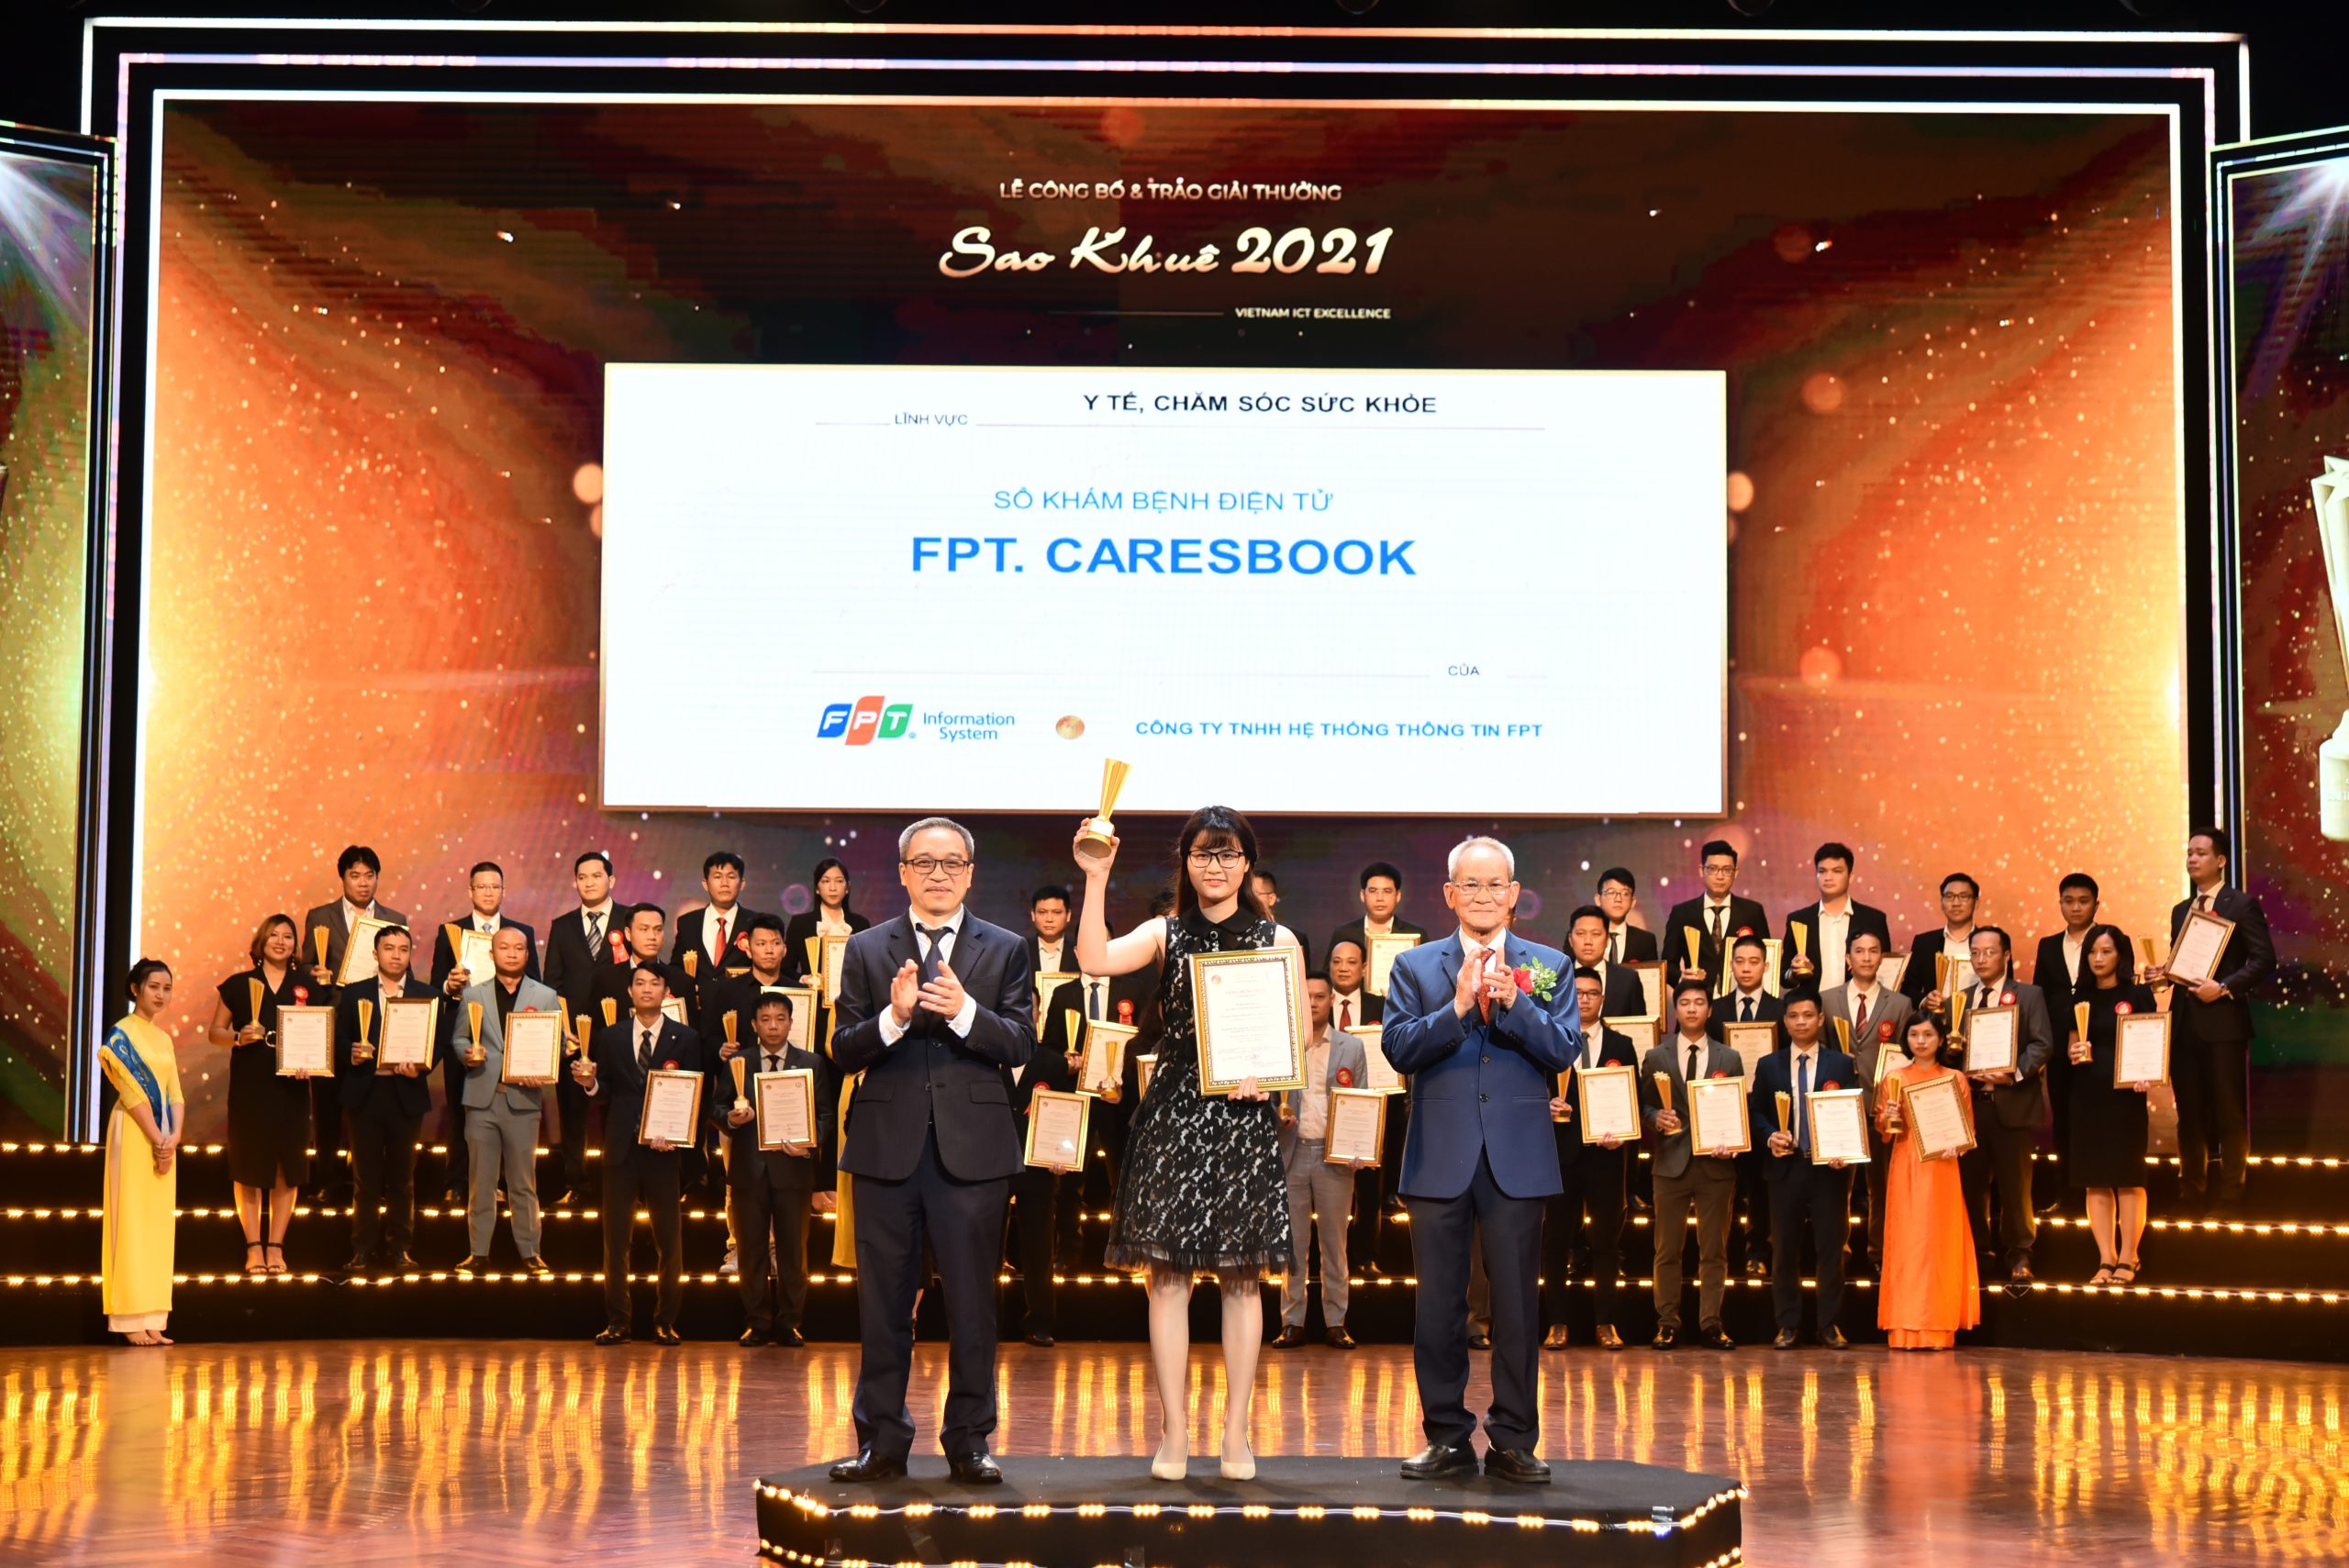 Sổ khám bệnh điện tử – FPT. CaresBook đạt Giải thưởng Sao Khuê 2021